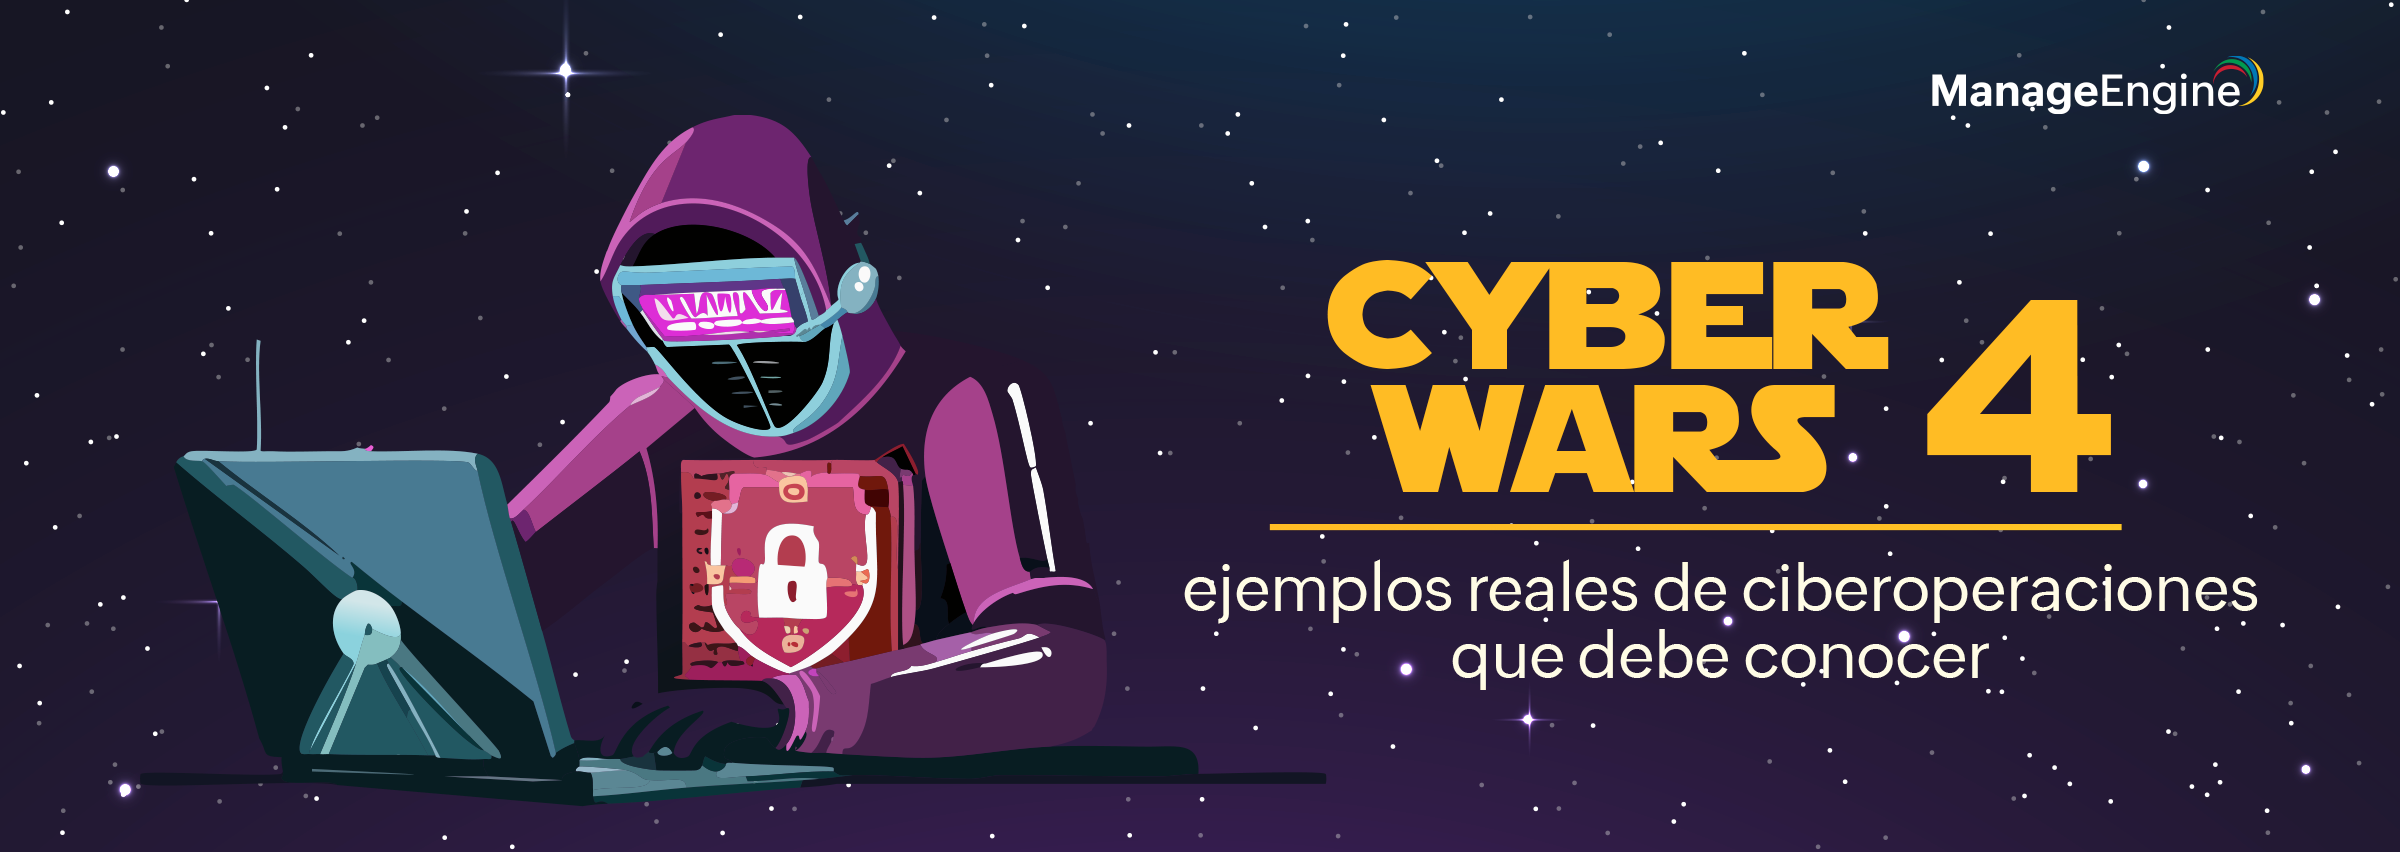 Cyberwars 4: ejemplos reales de ciberoperaciones que debe conocer